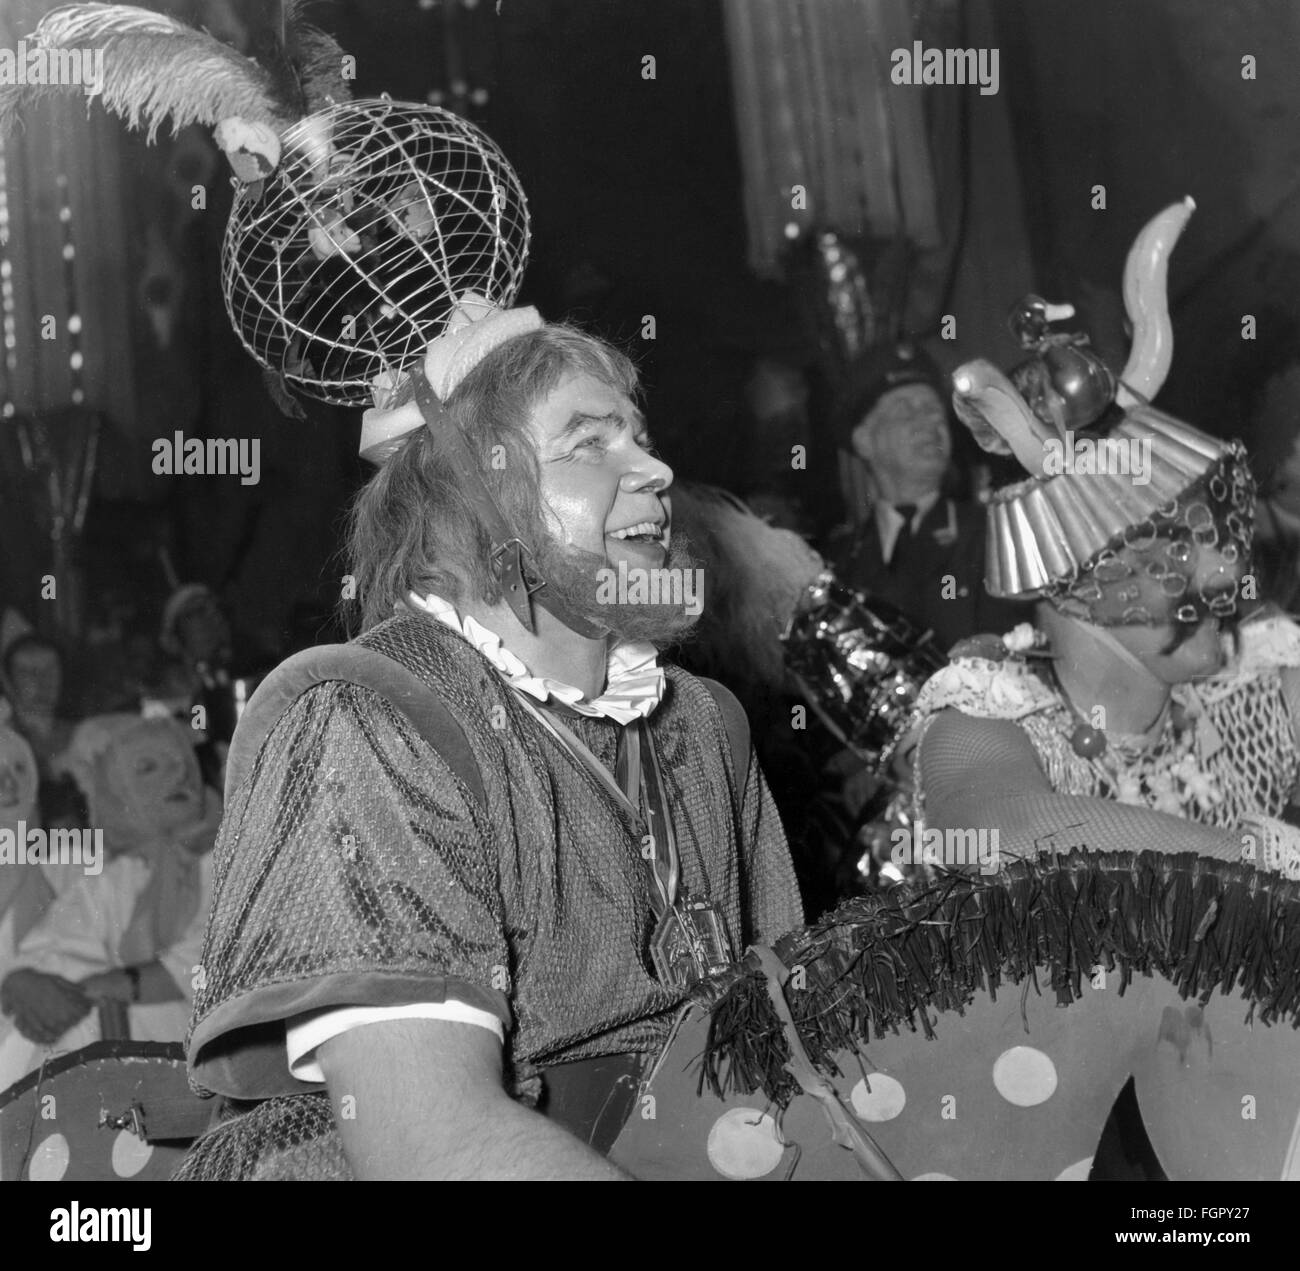 Festlichkeiten, Karneval, Fest der 'Deutschen Ritter', Ritter auf Holzpferden, Löwenbräukeller, München, 1958, Zusatz-Rechte-Clearenzen-nicht vorhanden Stockfoto